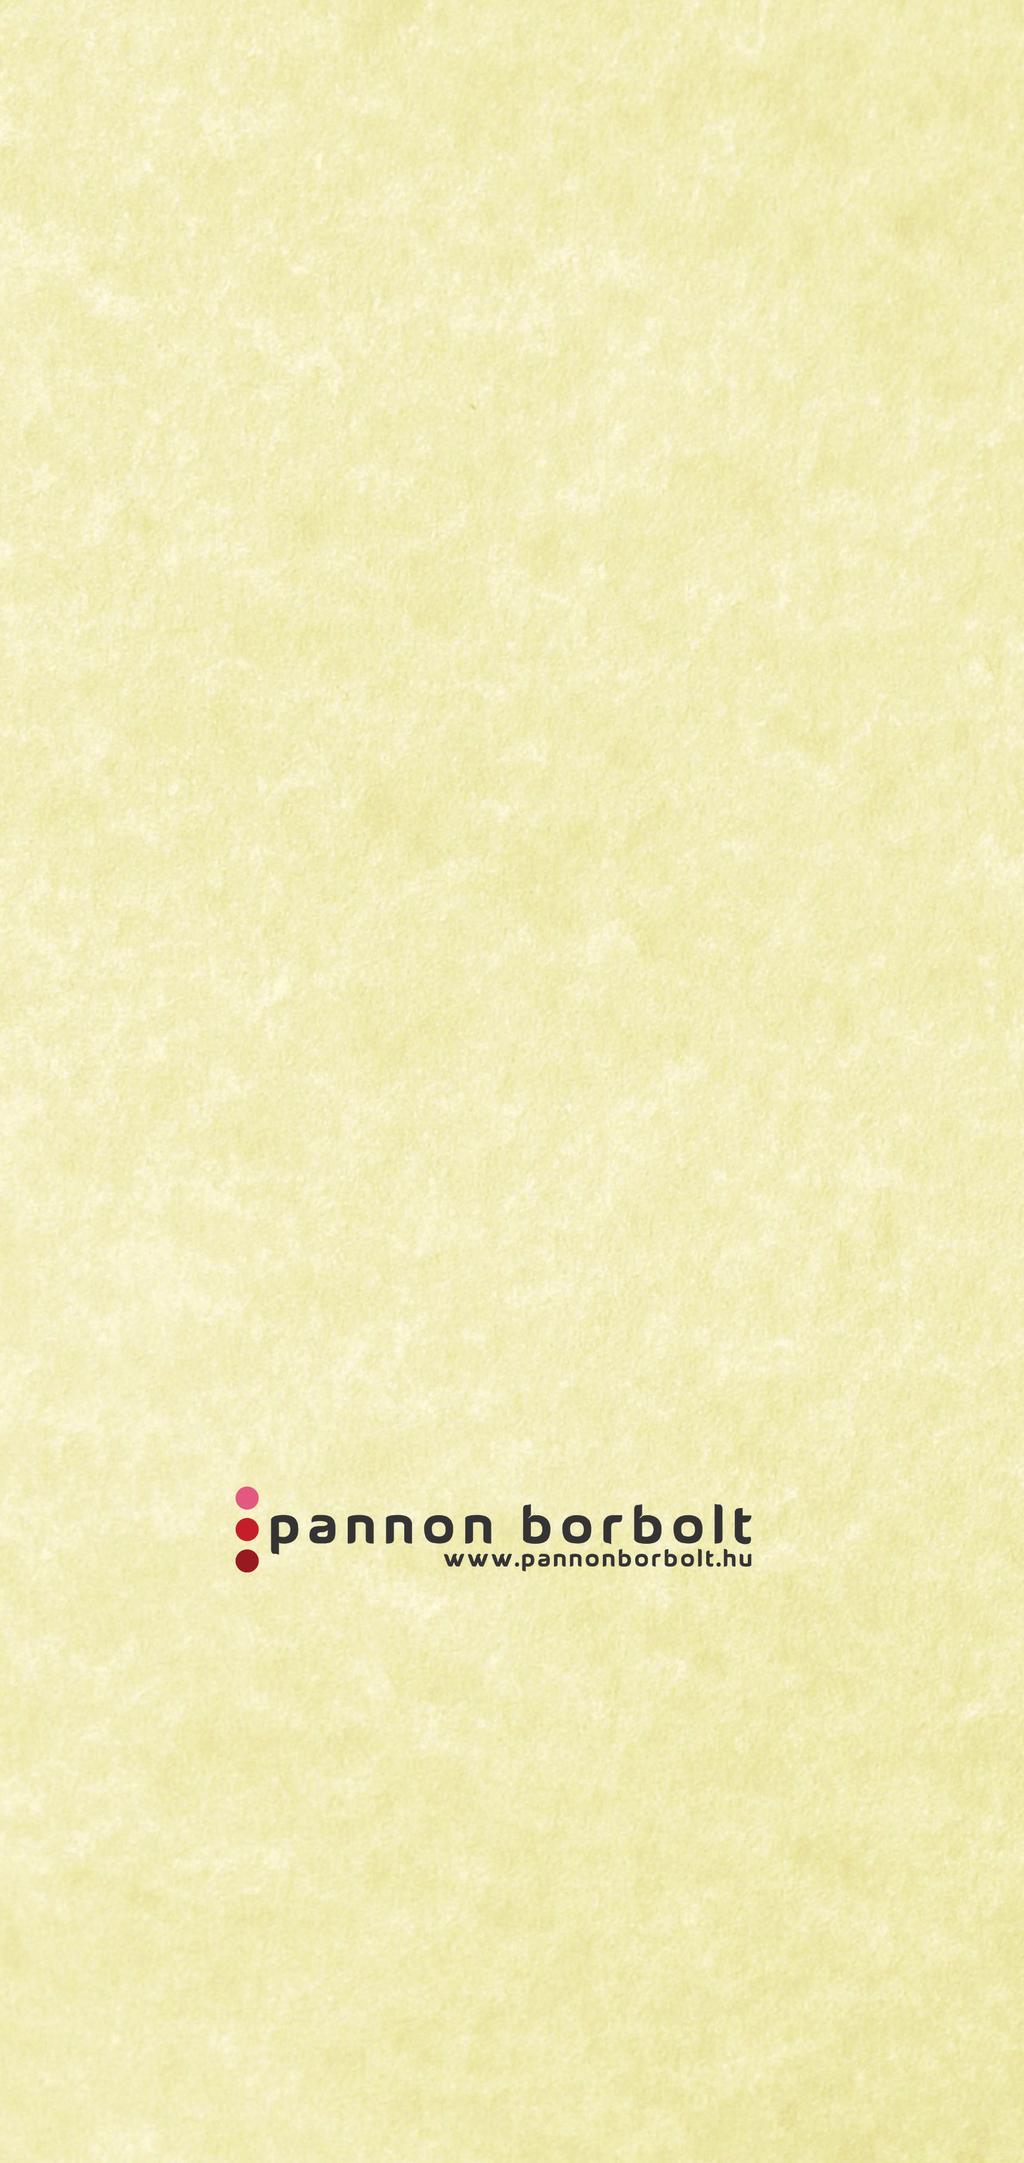 A Pannon Borbolt a régió borkínálatának átfogó spektrumát kínálja, az ismert pincészetektől a feltörekvő garázsborászatokig.